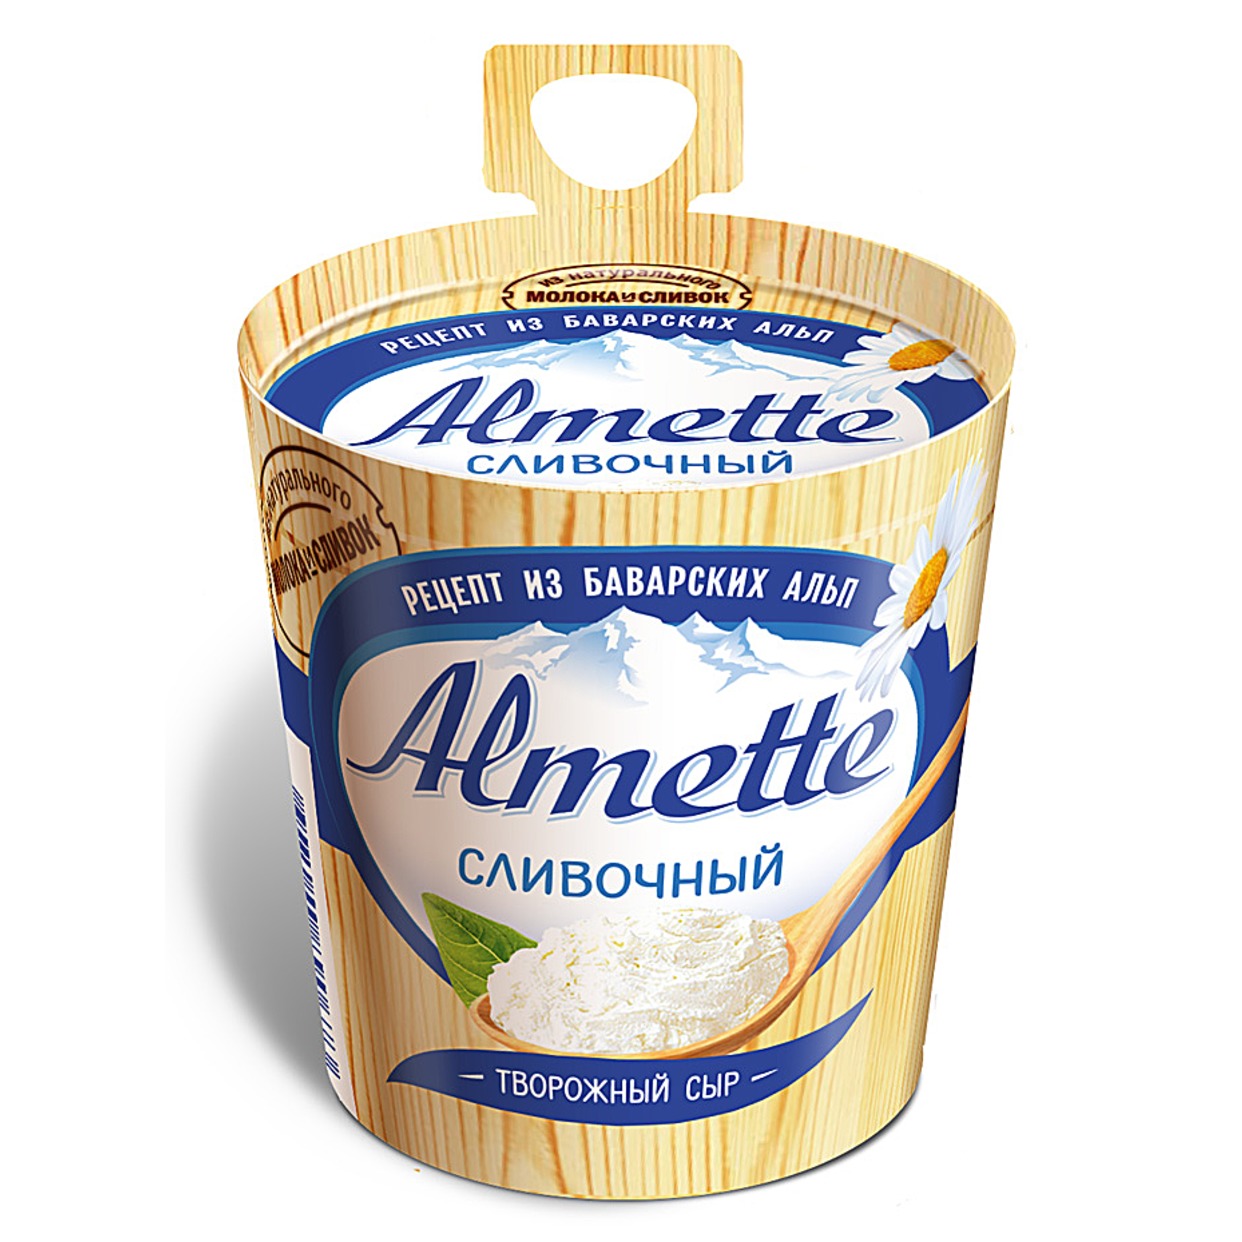 Сыр "Almette" творожный сливочный 60% 150г по акции в Пятерочке